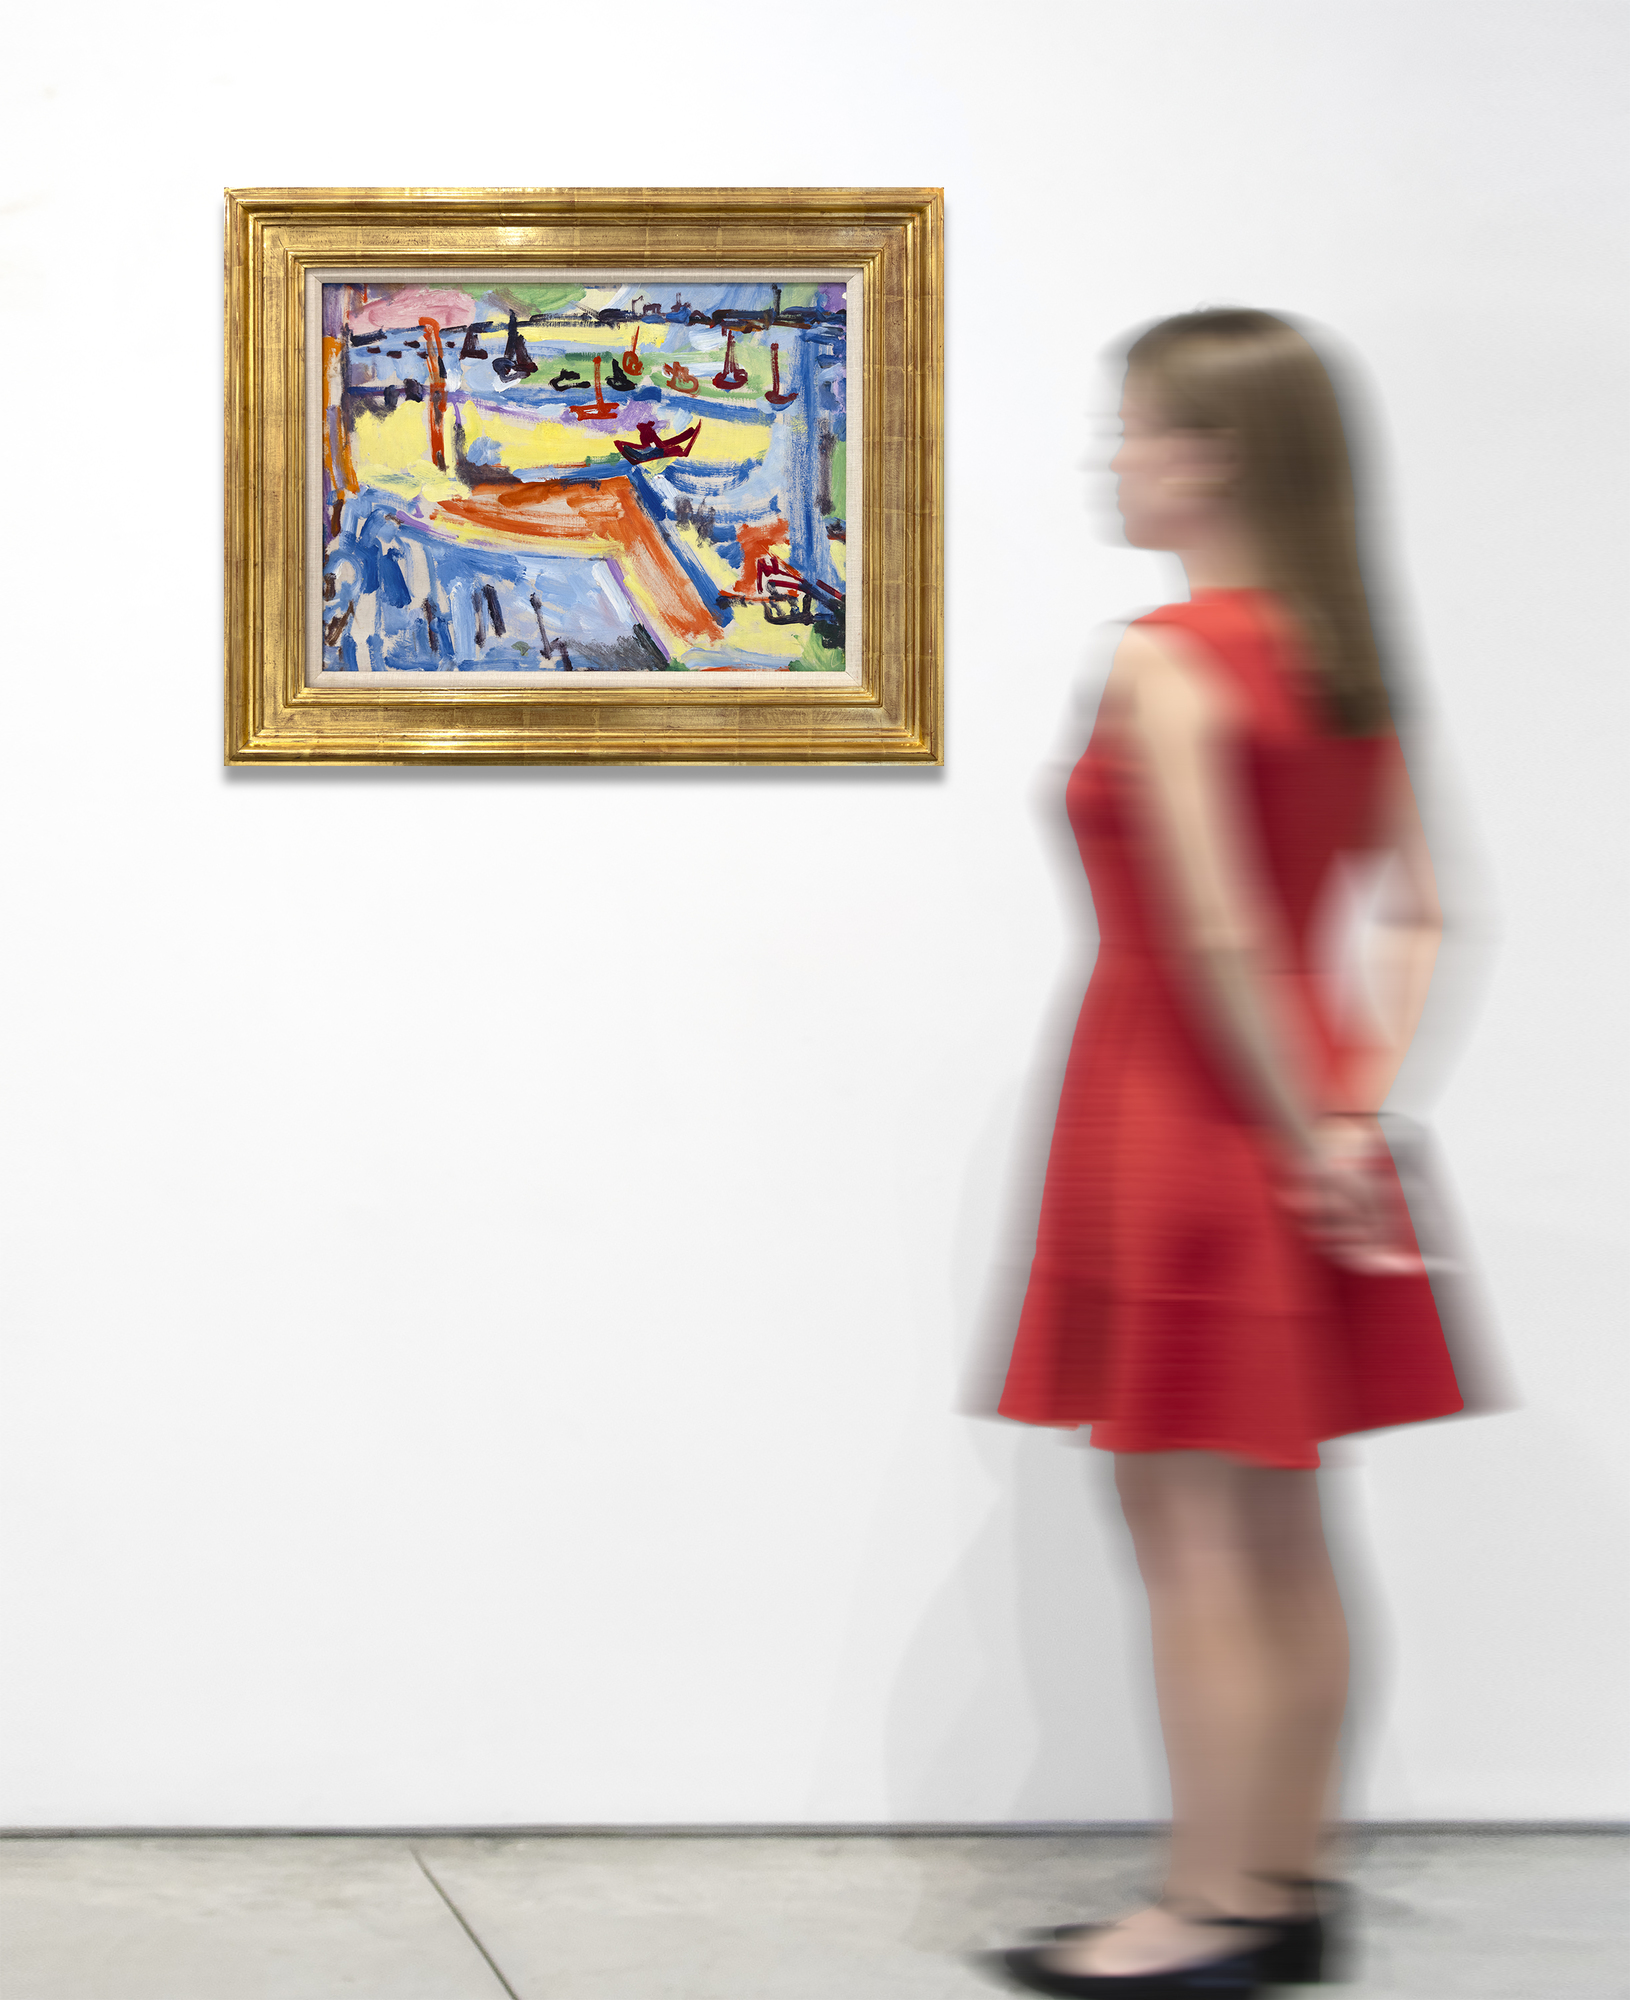 Aucun artiste n&#039;a comblé le fossé entre le modernisme européen et l&#039;expressionnisme abstrait américain comme l&#039;a fait Hans Hofmann. La raison en est simple : il a été formé dans les académies parisiennes avant la Première Guerre mondiale et s&#039;est lié d&#039;amitié avec Henri Matisse, Pablo Picasso, Georges Braque, Robert et Sonia Delaunay, ce qui lui a donné un niveau de familiarité avec le modernisme européen qu&#039;aucun autre expressionniste abstrait n&#039;a possédé. Untitled (View of Provincetown Harbor) combine des éléments de cette première époque, la couleur débridée des Fauves dans des passages largement brossés avec la promesse de la peinture automatiste de l&#039;école de New York à venir. Très gestuelle, elle mêle les motifs et la vitesse du pinceau de Raoul Dufy à une projection plus masculine et plus audacieuse, suggérant les racines de l&#039;Action Painting.